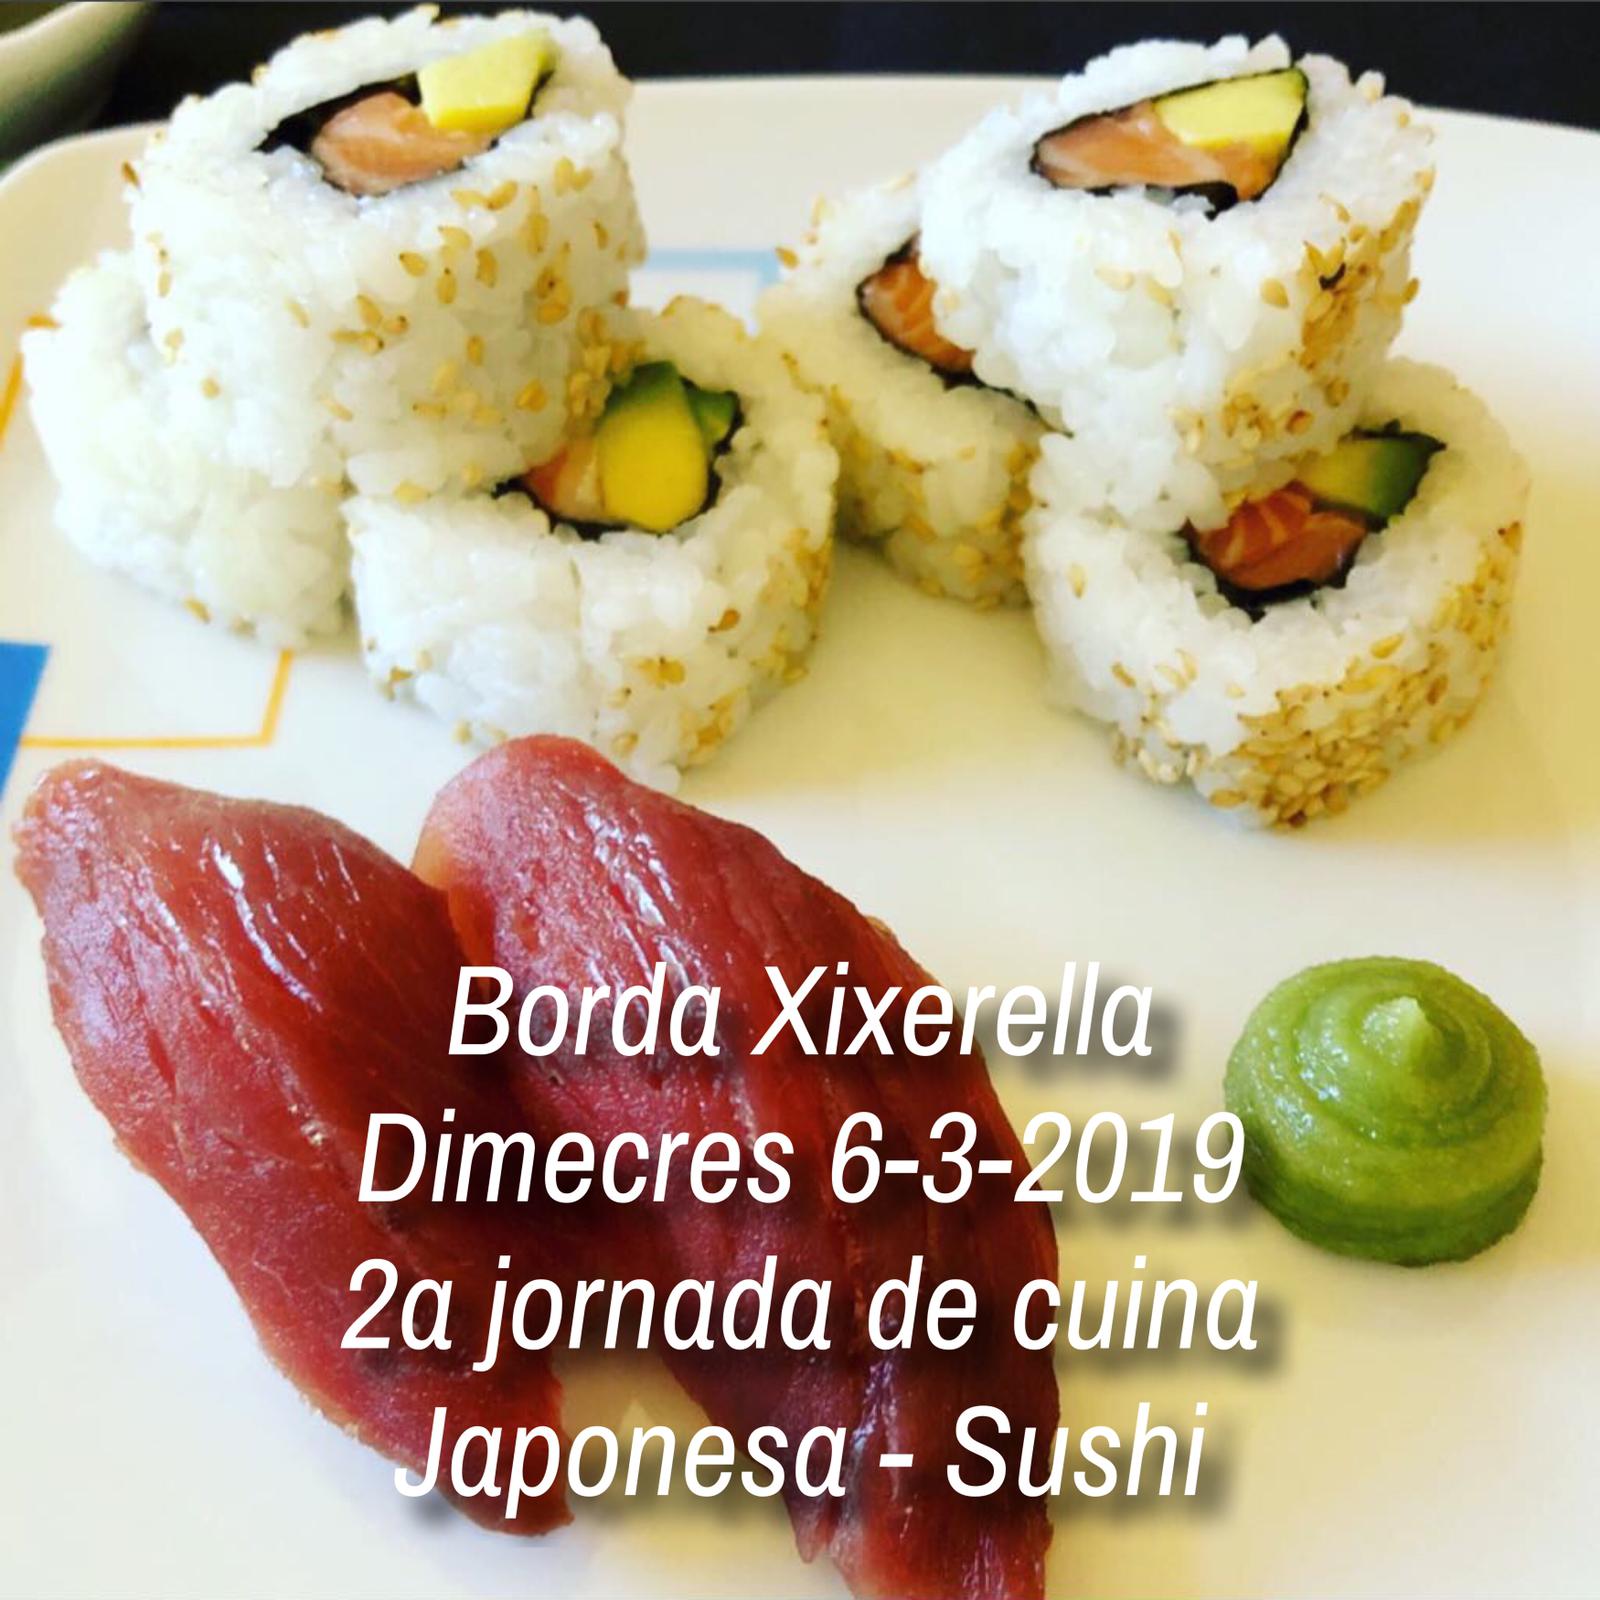 Borda Xixerella - setmana de Carnaval. Dimecres 6 - 3 - 2019 - 2a jornada de cuina Japonesa - Sushi - Reserves T. +376841109